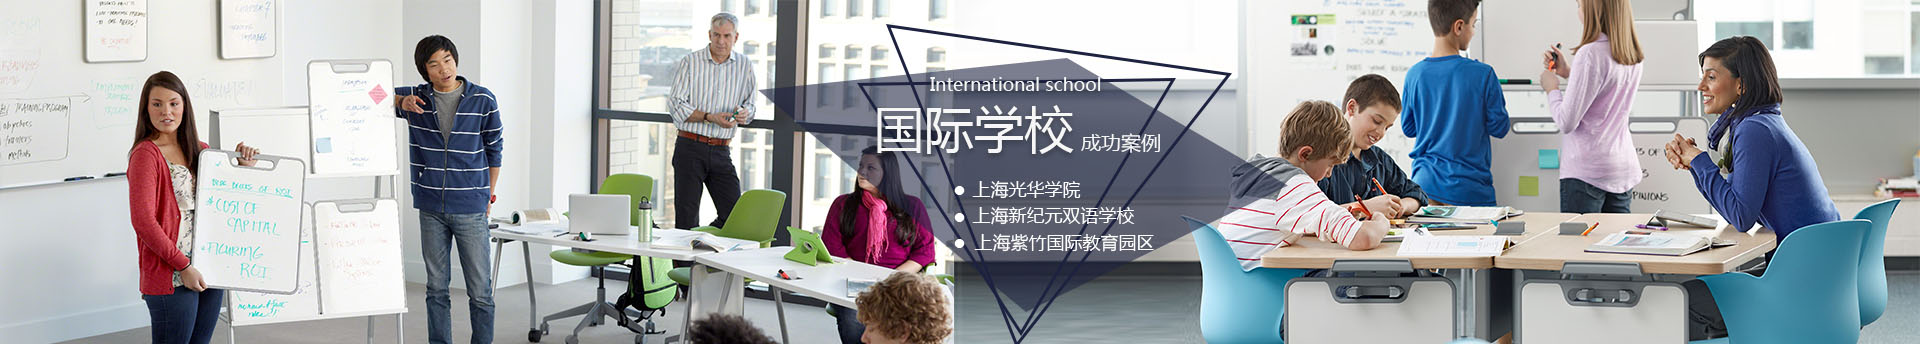 上海光华学校国际学校家具成功案例-SEEWIN诗敏学校家具国际学校家具-学生课桌椅-学生宿舍床-未来教室家具-上海诗敏学校家具厂家